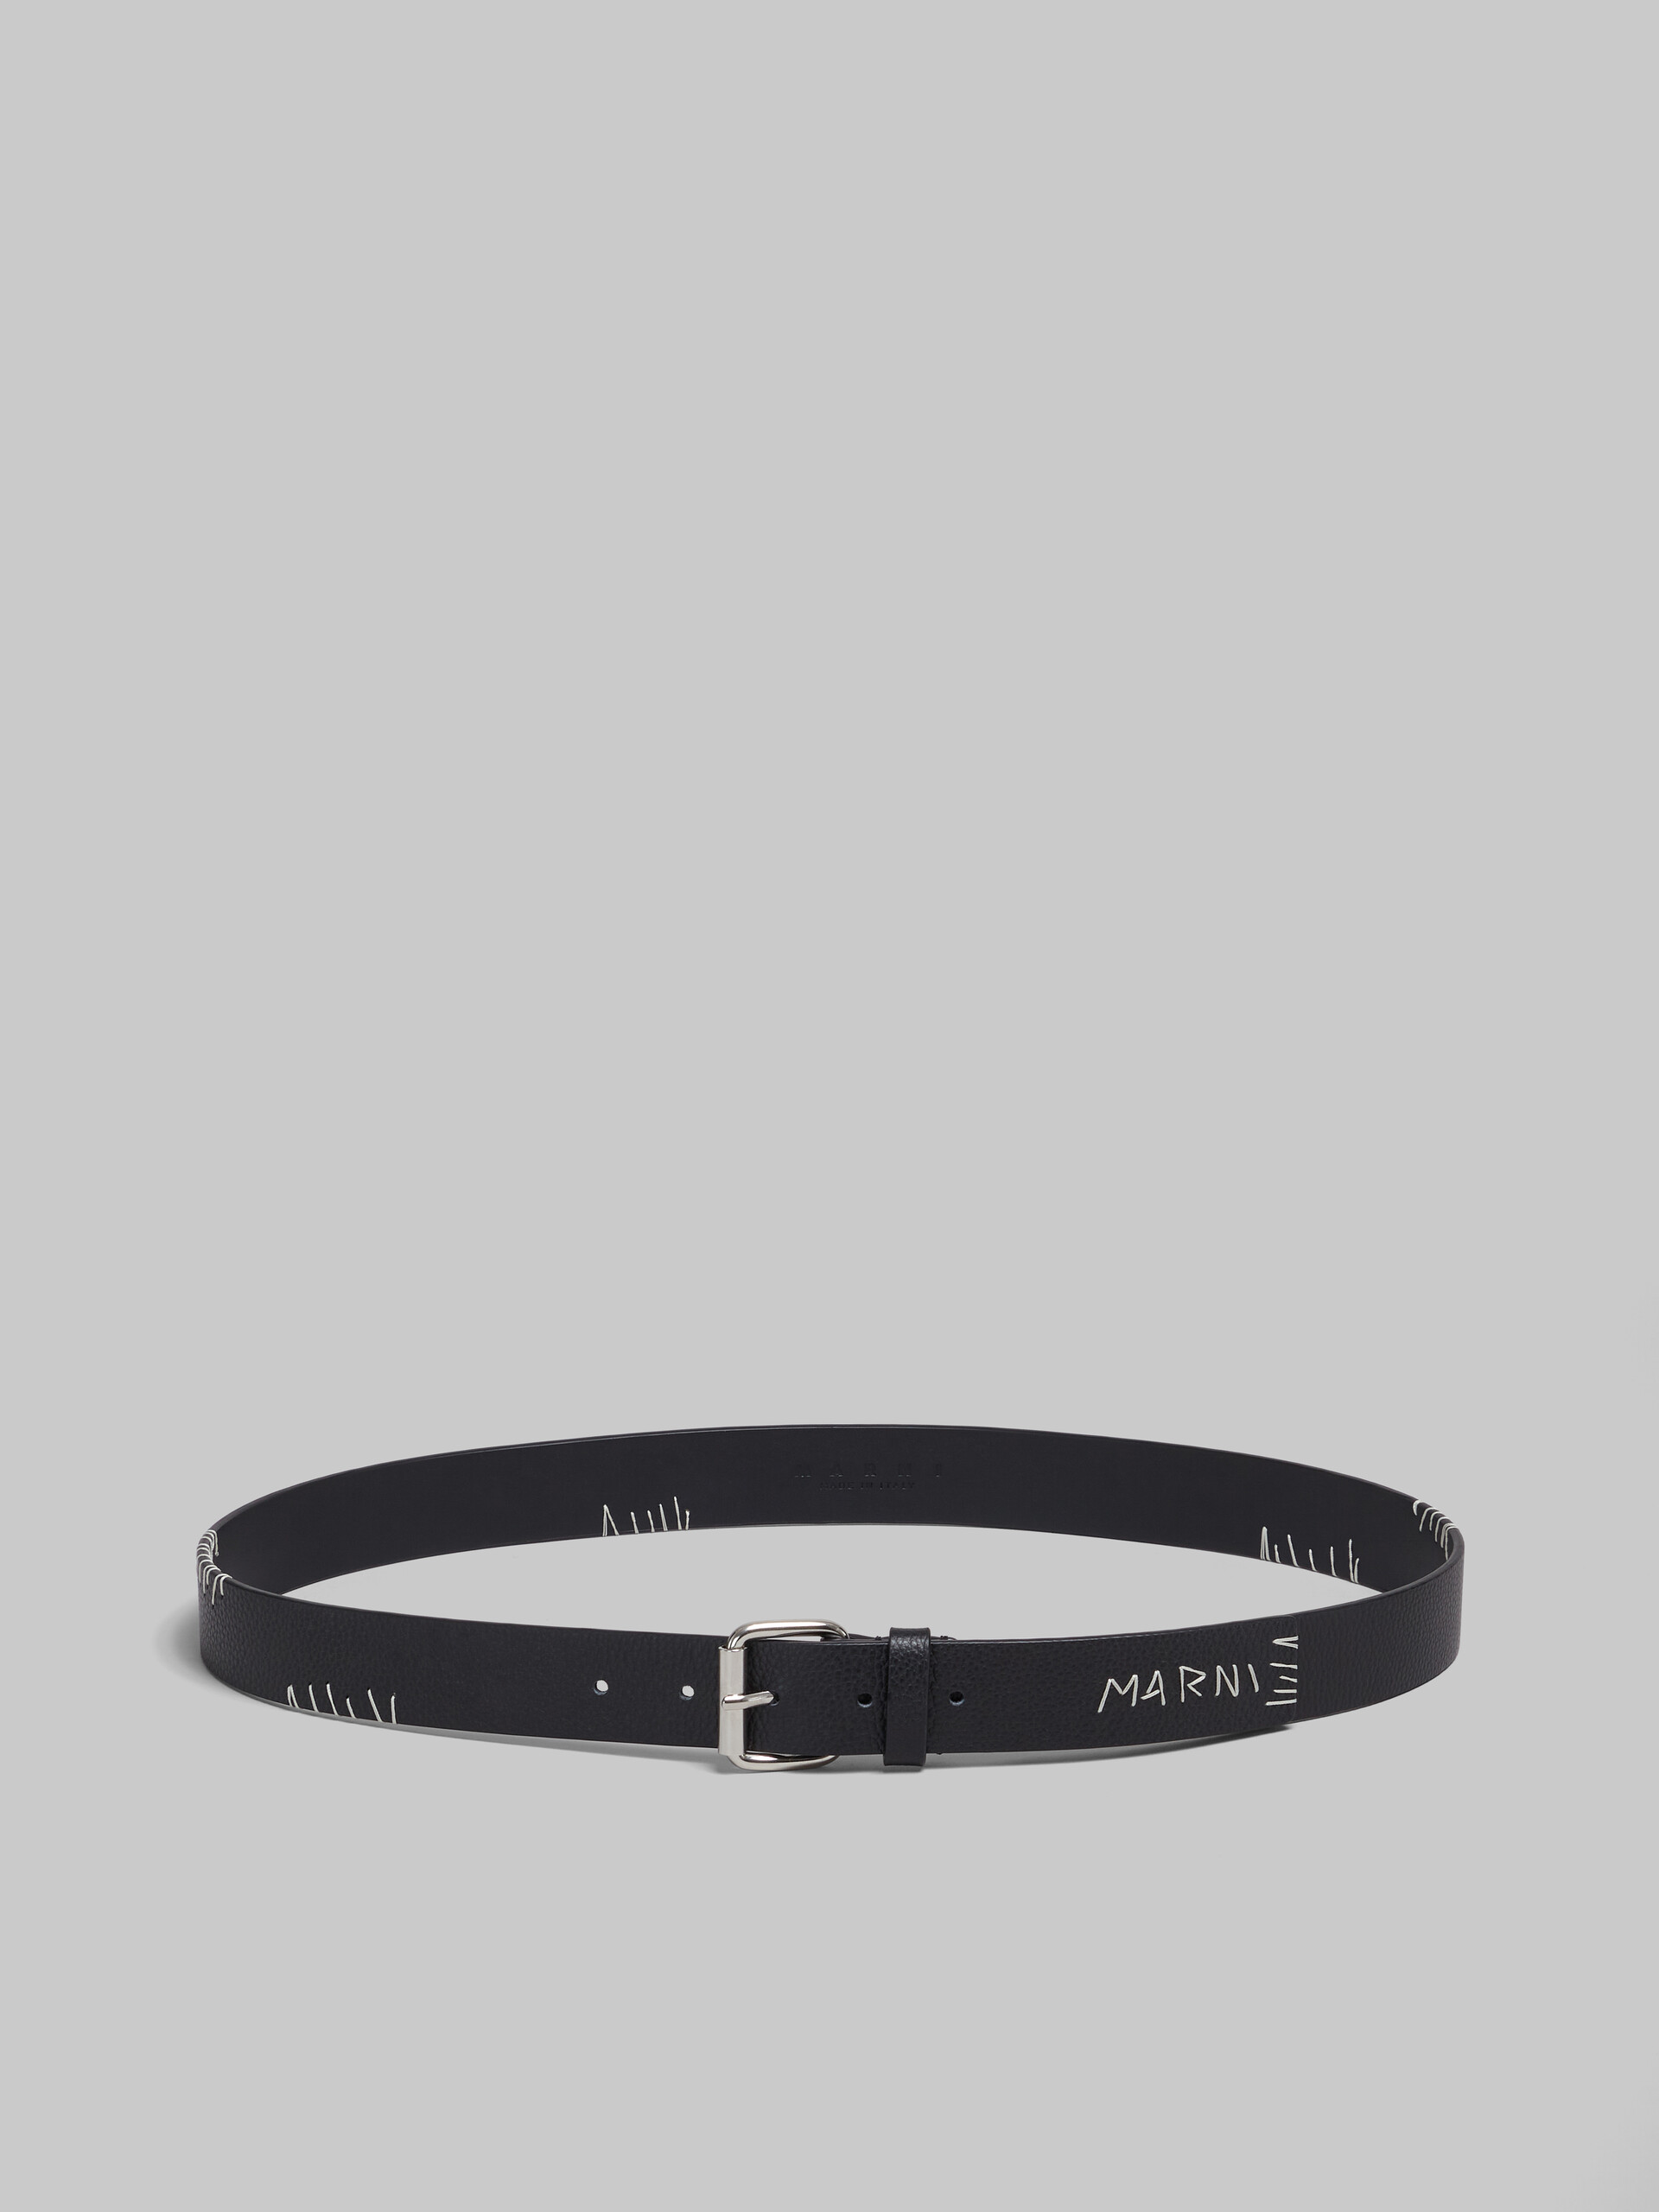 Black leather belt with Marni Mending - Belts - Image 1